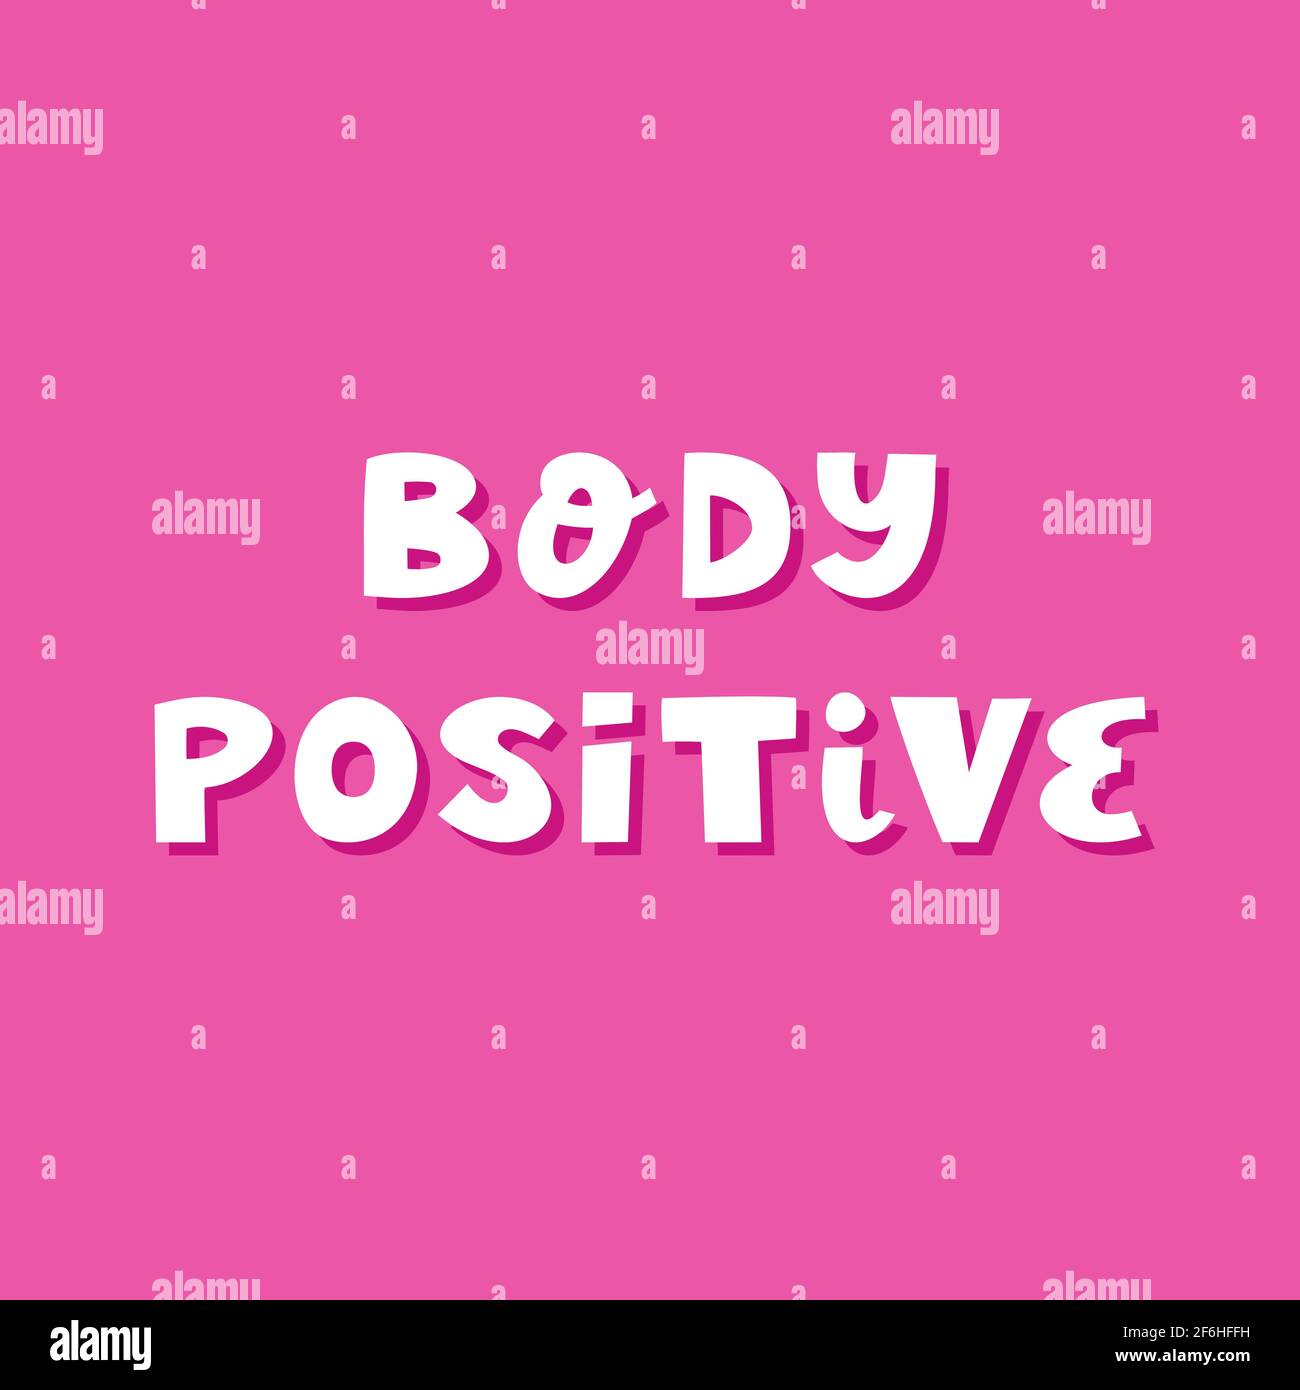 Körper positiv. Niedliche handgezeichnete Schriftzüge im modernen skandinavischen Stil auf rosa Hintergrund. Stock Vektor